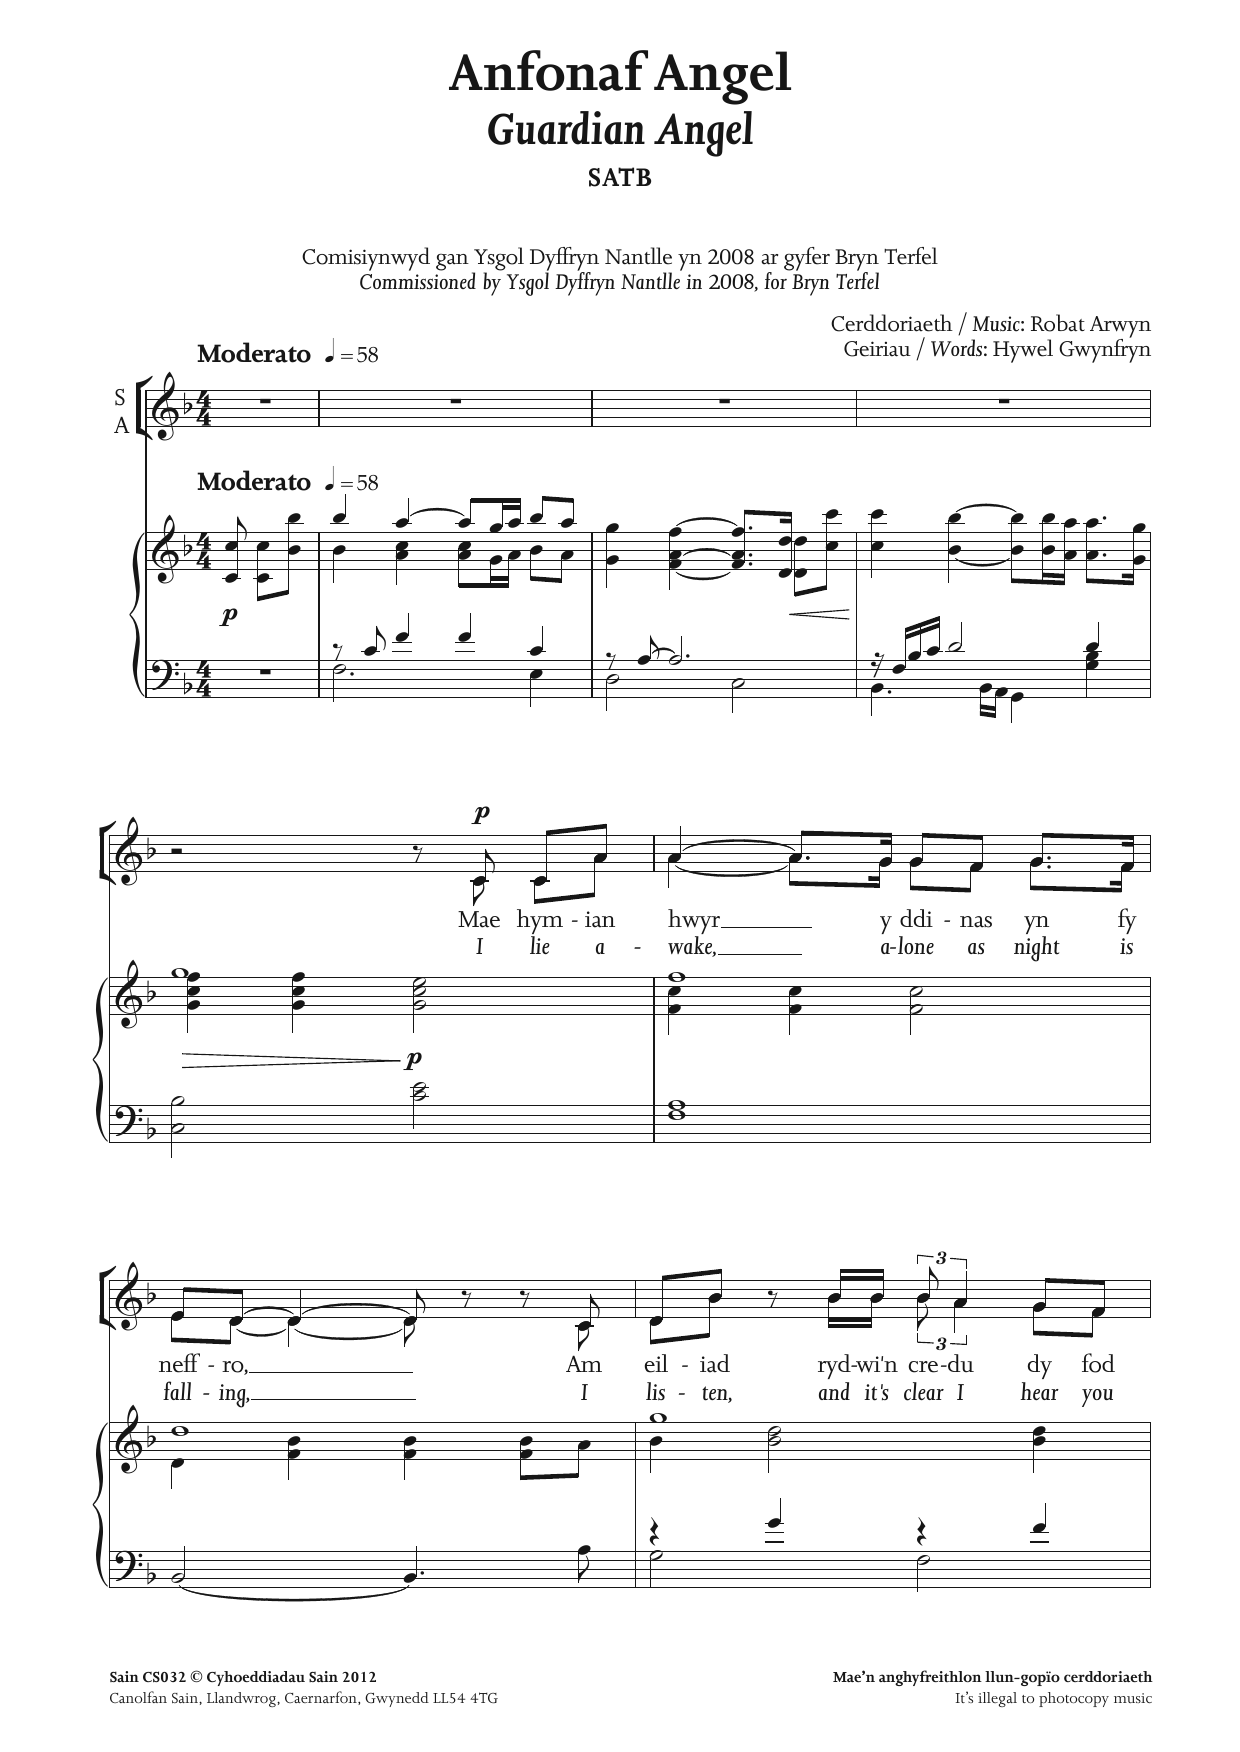 Robat Arwyn Anfonaf Angel (Guardian Angel) sheet music notes and chords arranged for SATB Choir